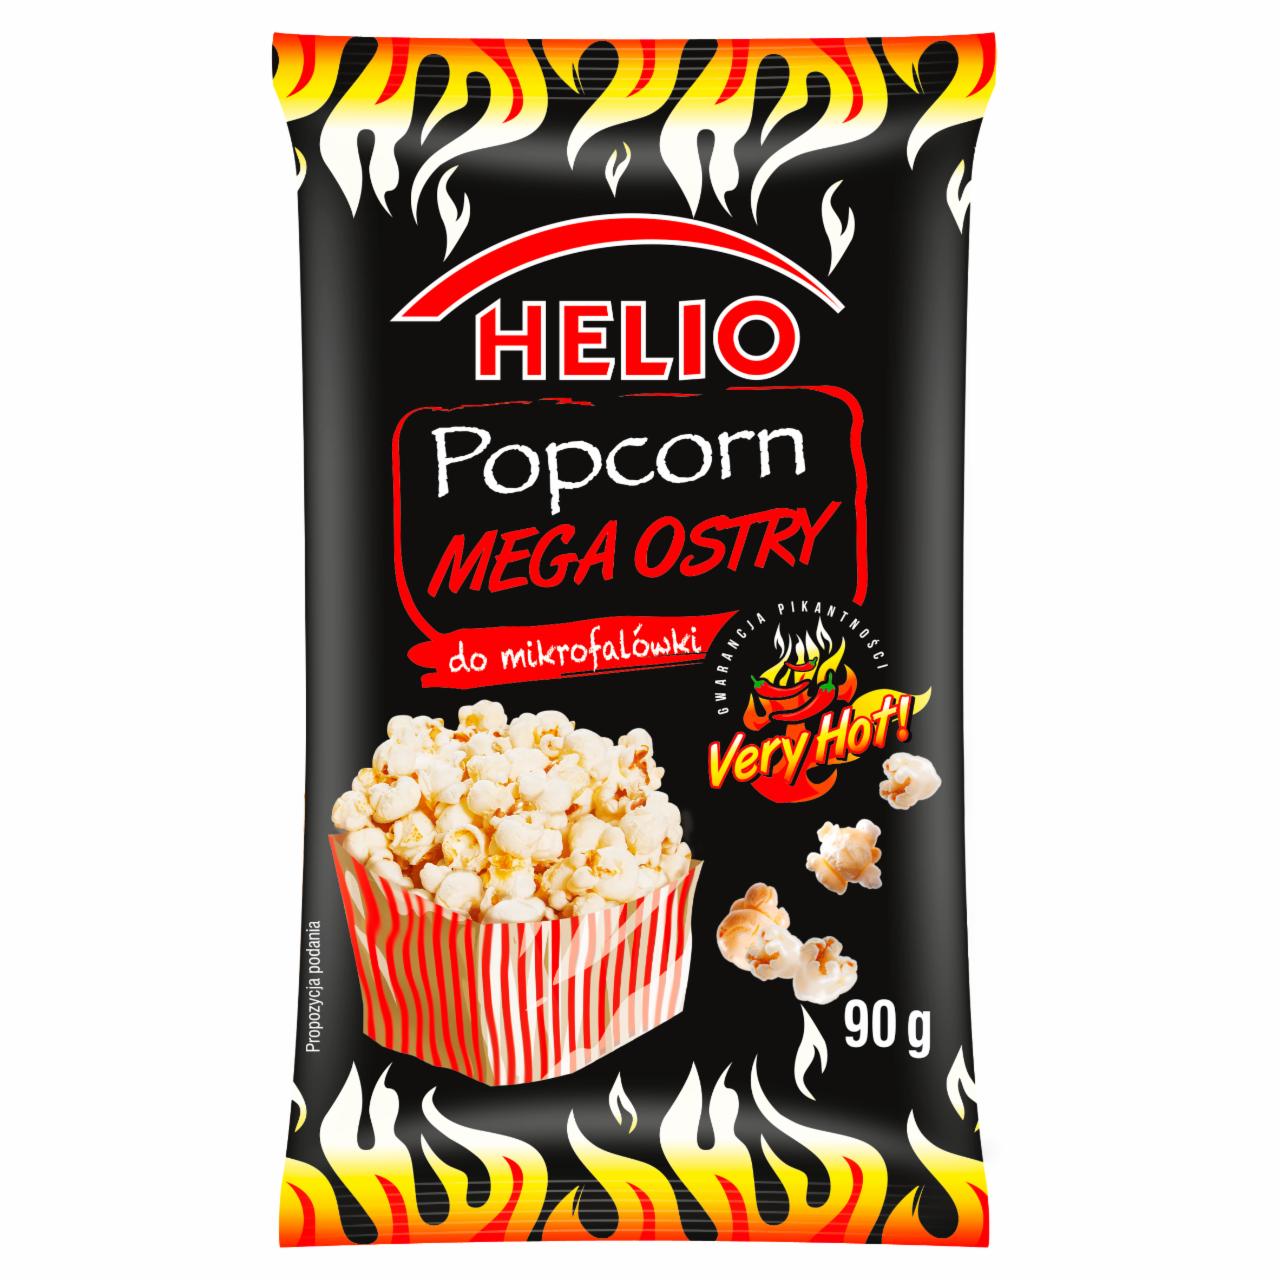 Zdjęcia - Helio Popcorn mega ostry do mikrofalówki 90 g